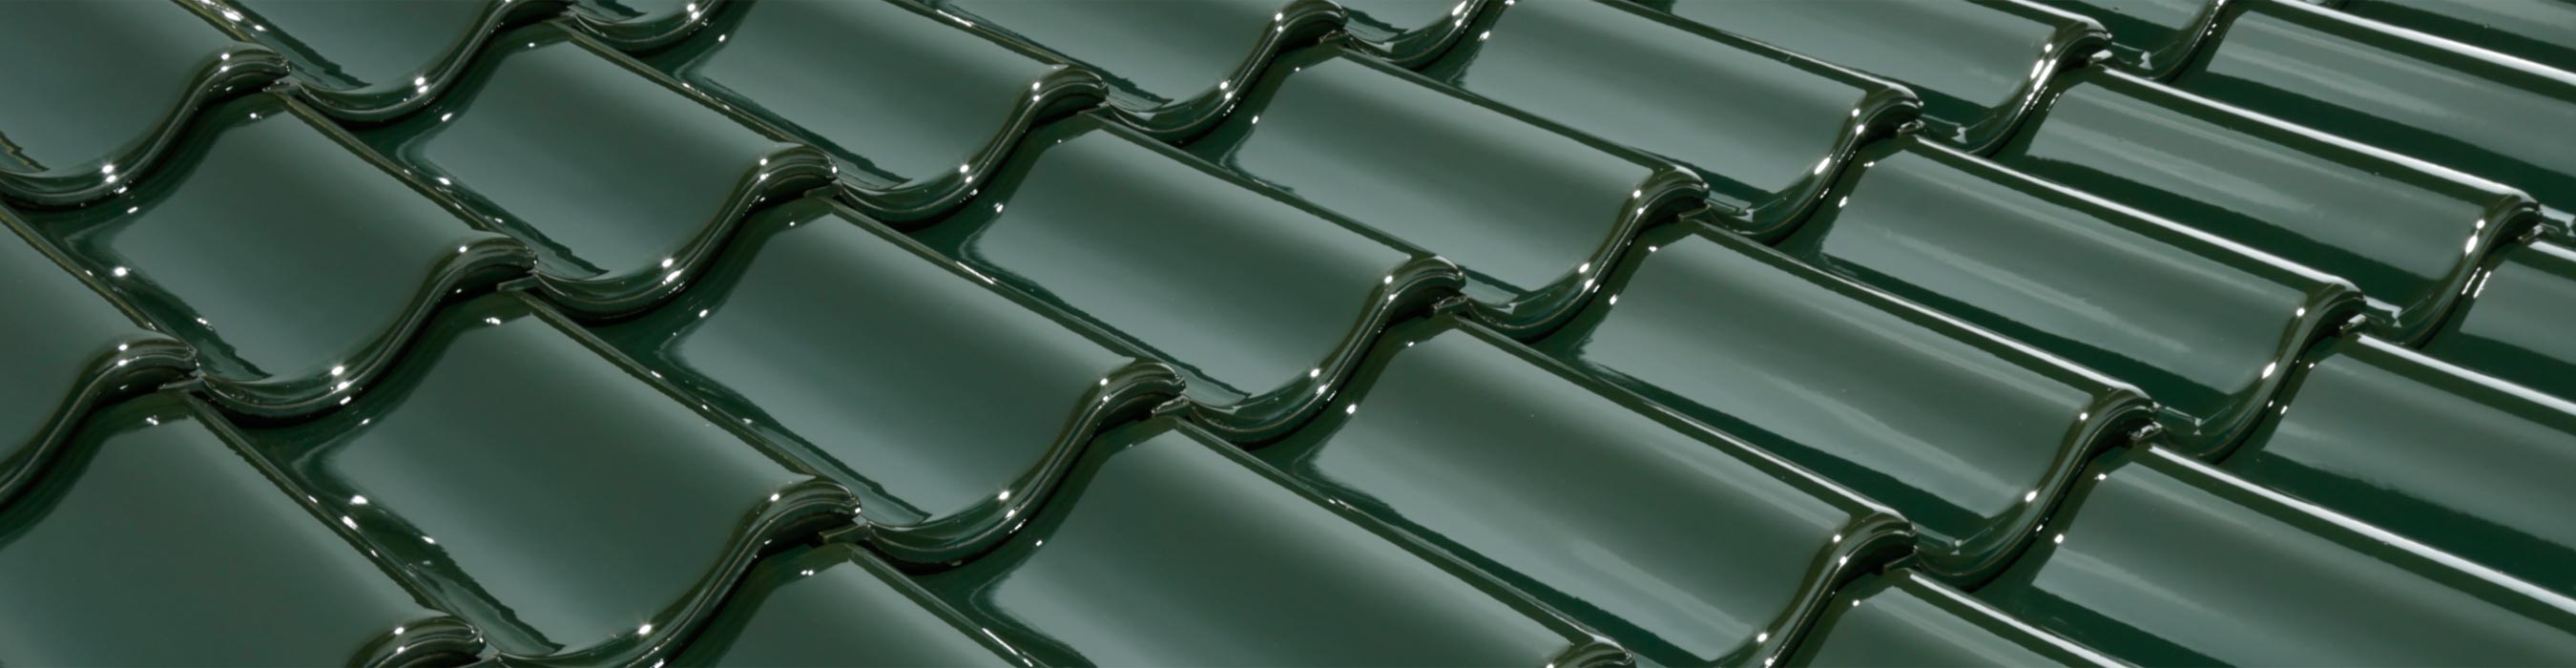 Laumans Dachziegel IDEAL VARIABEL in Farbe Nr. 101 – malachitgrün